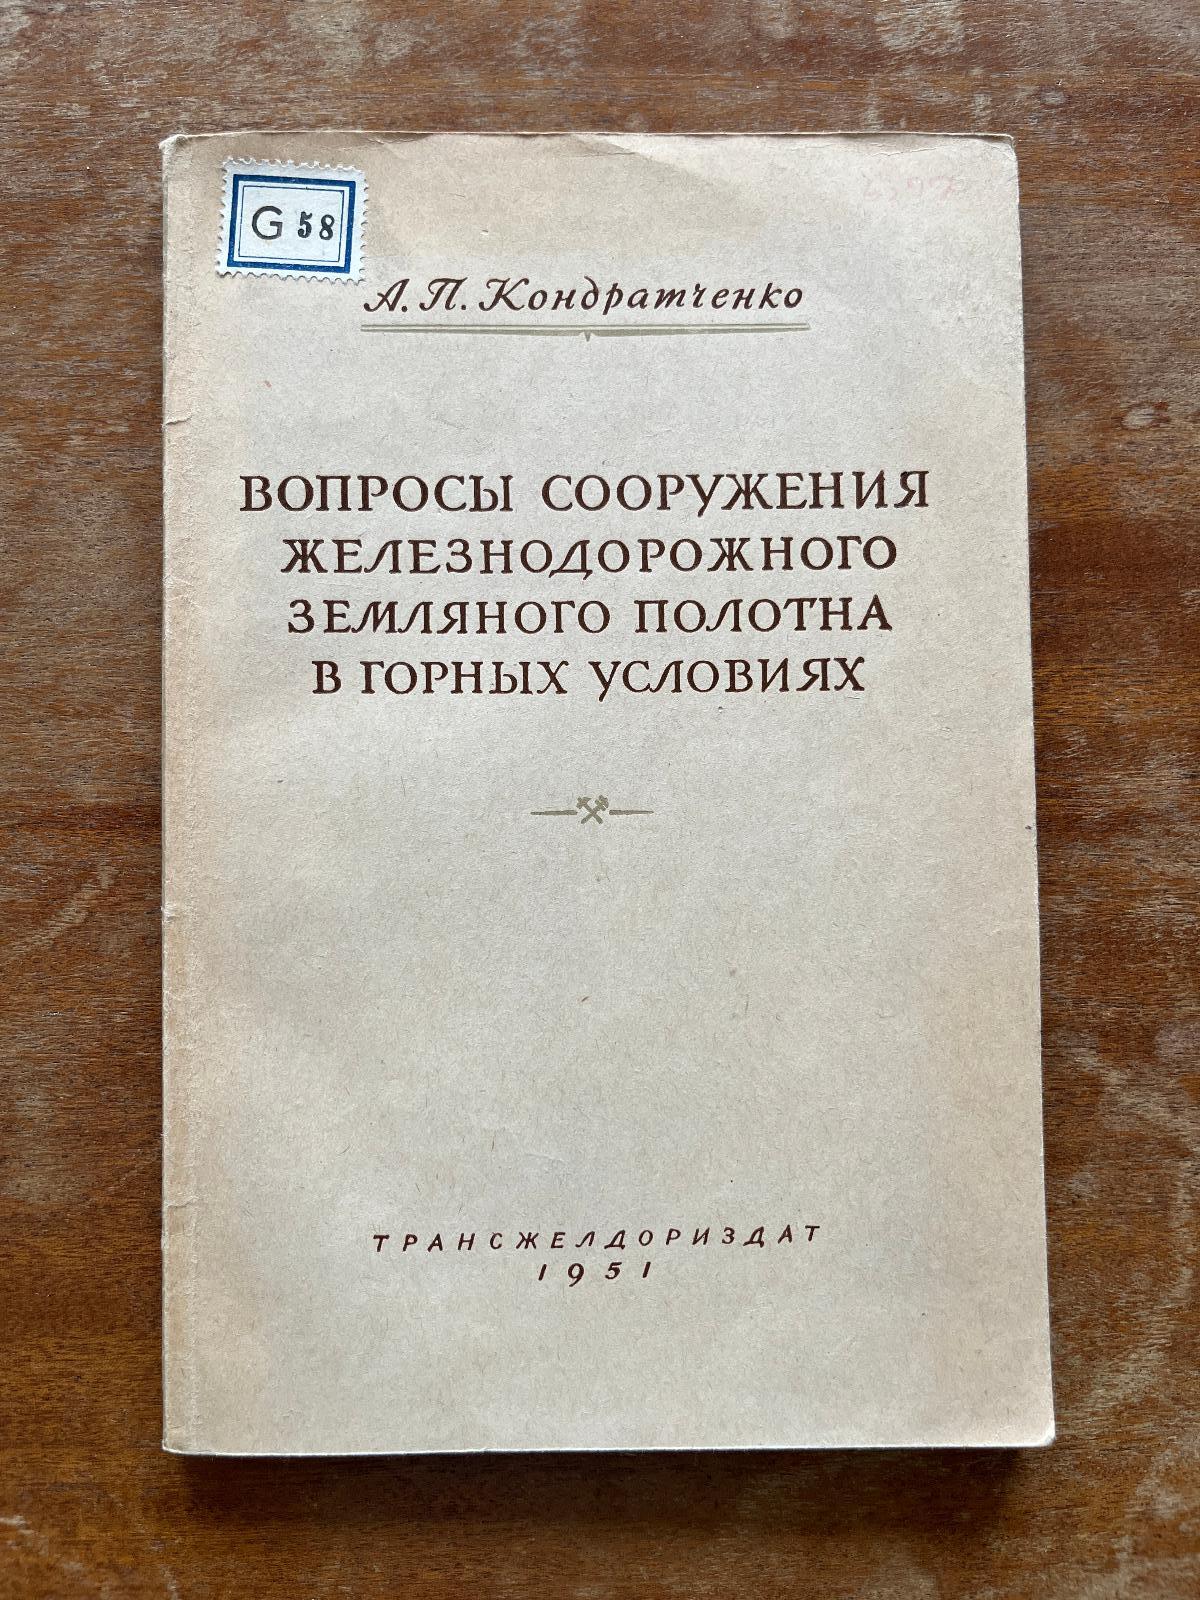 Cudzojazyčná železničná literatúra (1951) (g) - Knihy